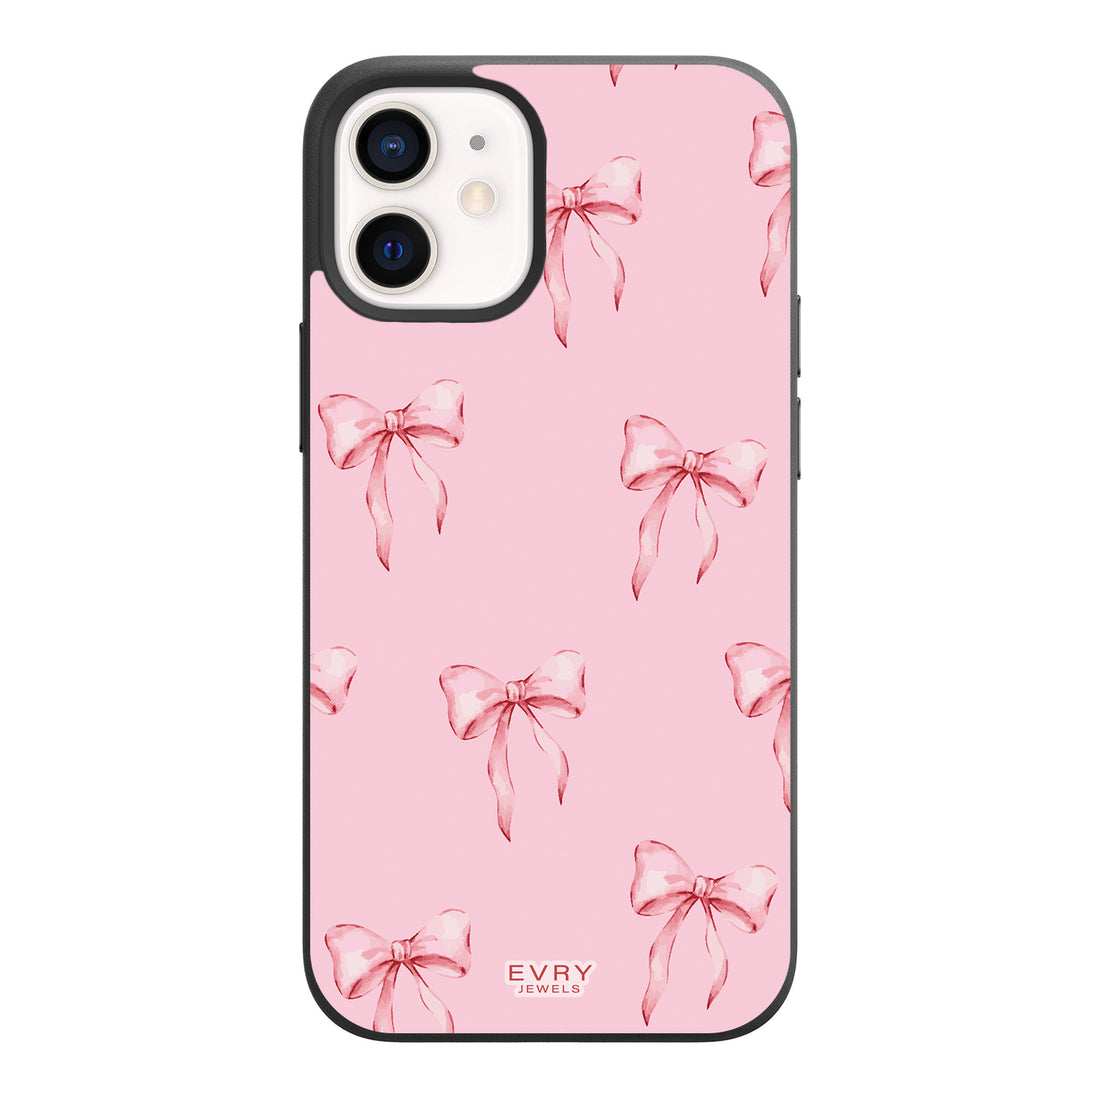 Posie Pink Phone Case